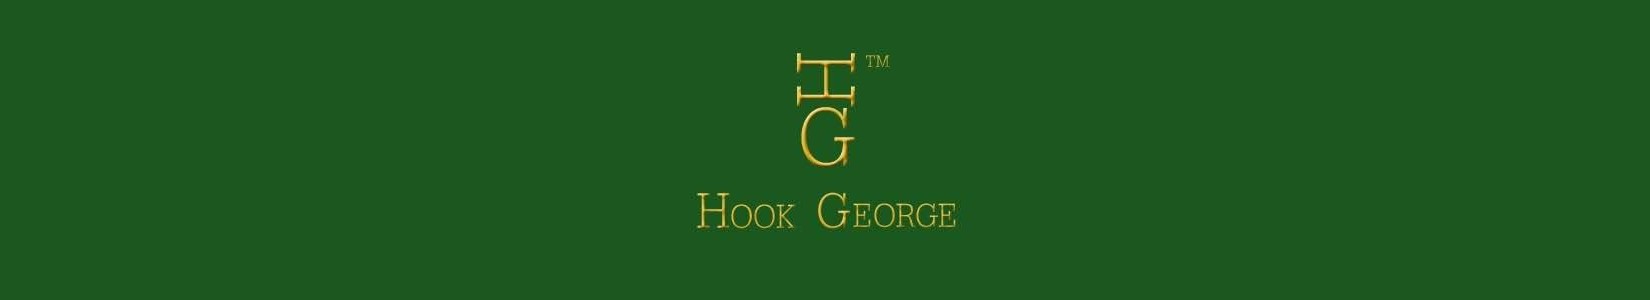 HOOK GEORGE